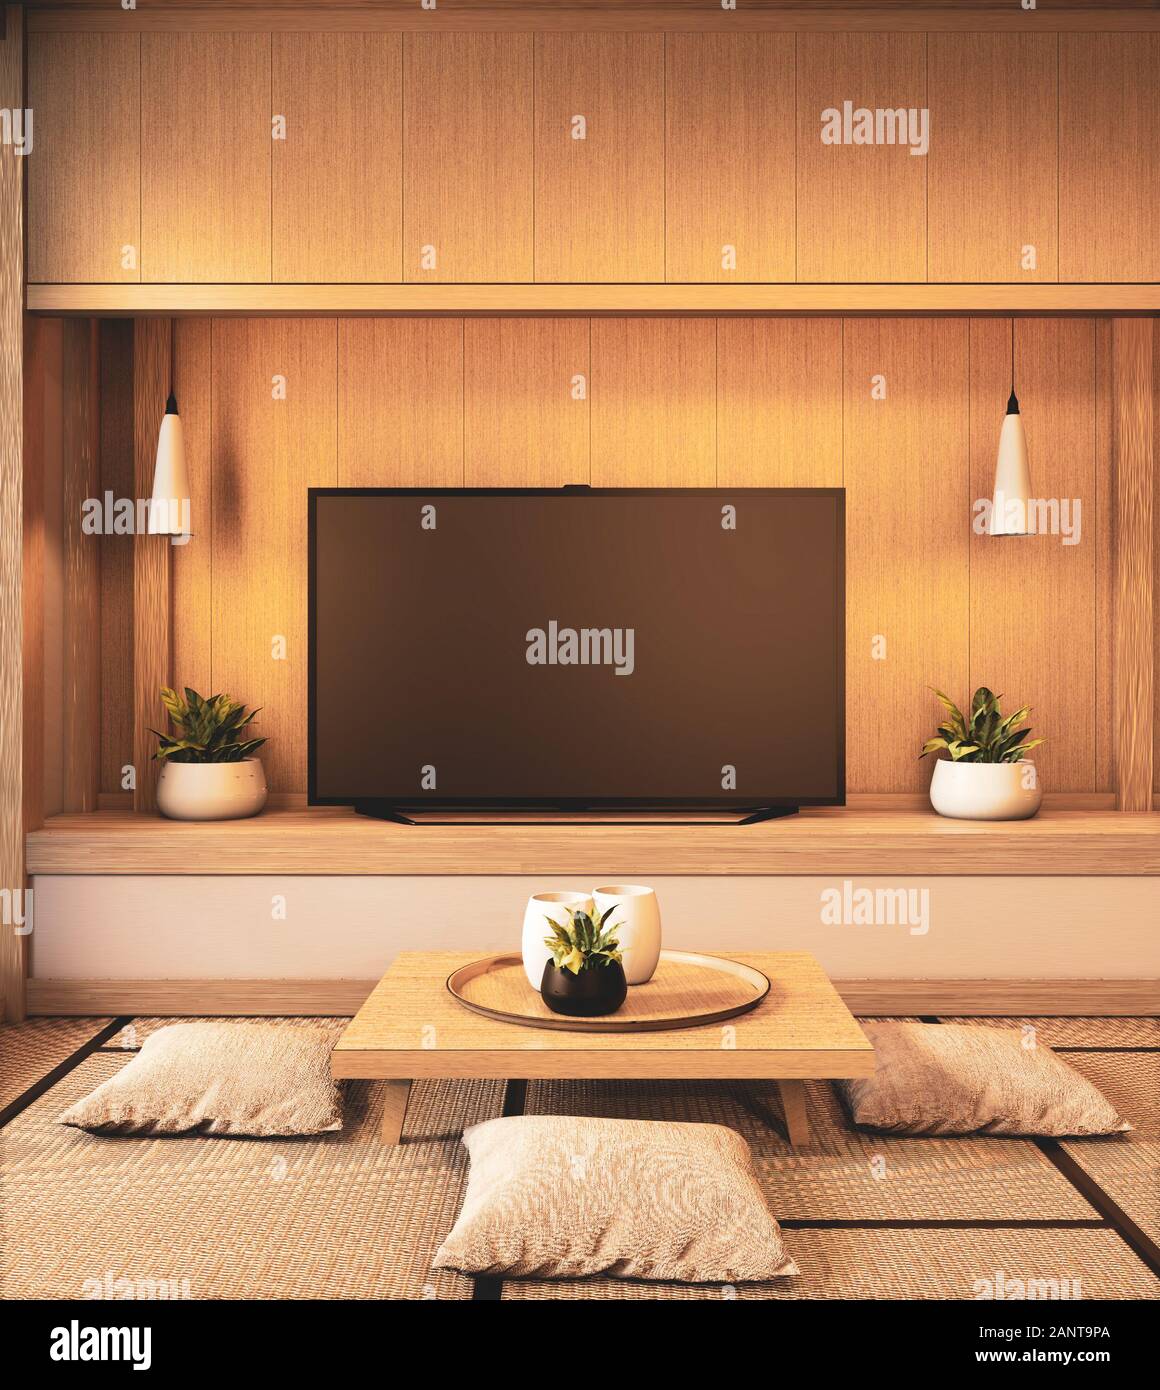 Tường gỗ thiết kế Nhật Bản mang đến cho phòng bạn một vẻ đẹp thanh thoát và tinh tế. Với các chi tiết nhỏ và viền đồng, tường gỗ thiết kế Nhật Bản sẽ làm cho ngôi nhà của bạn trở nên sang trọng và đẳng cấp hơn. Hãy khám phá hình ảnh liên quan để tìm hiểu thêm!